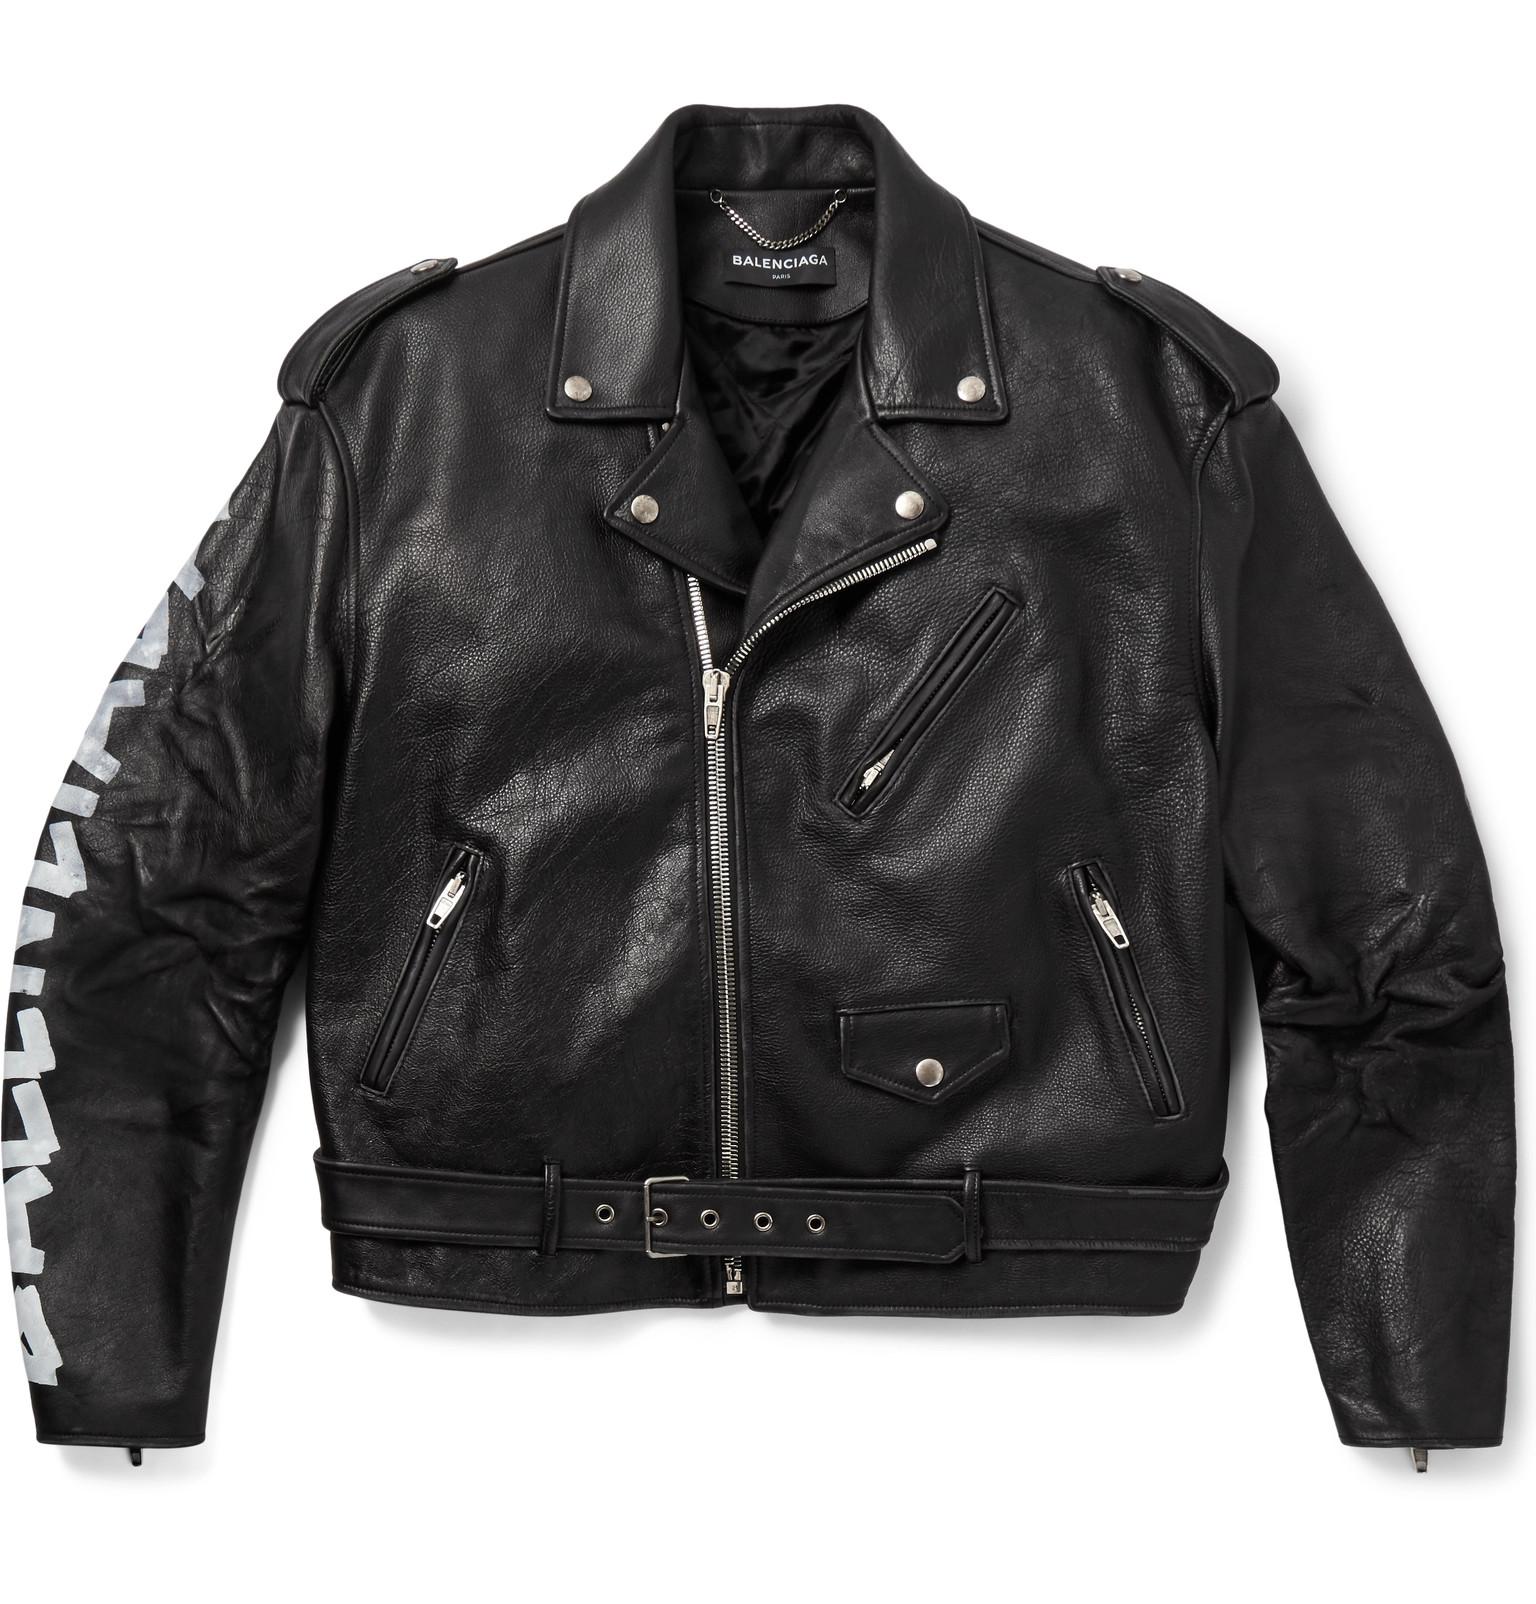 Balenciaga Black and White Leather Motorcycle Jacket  BlackSkinny